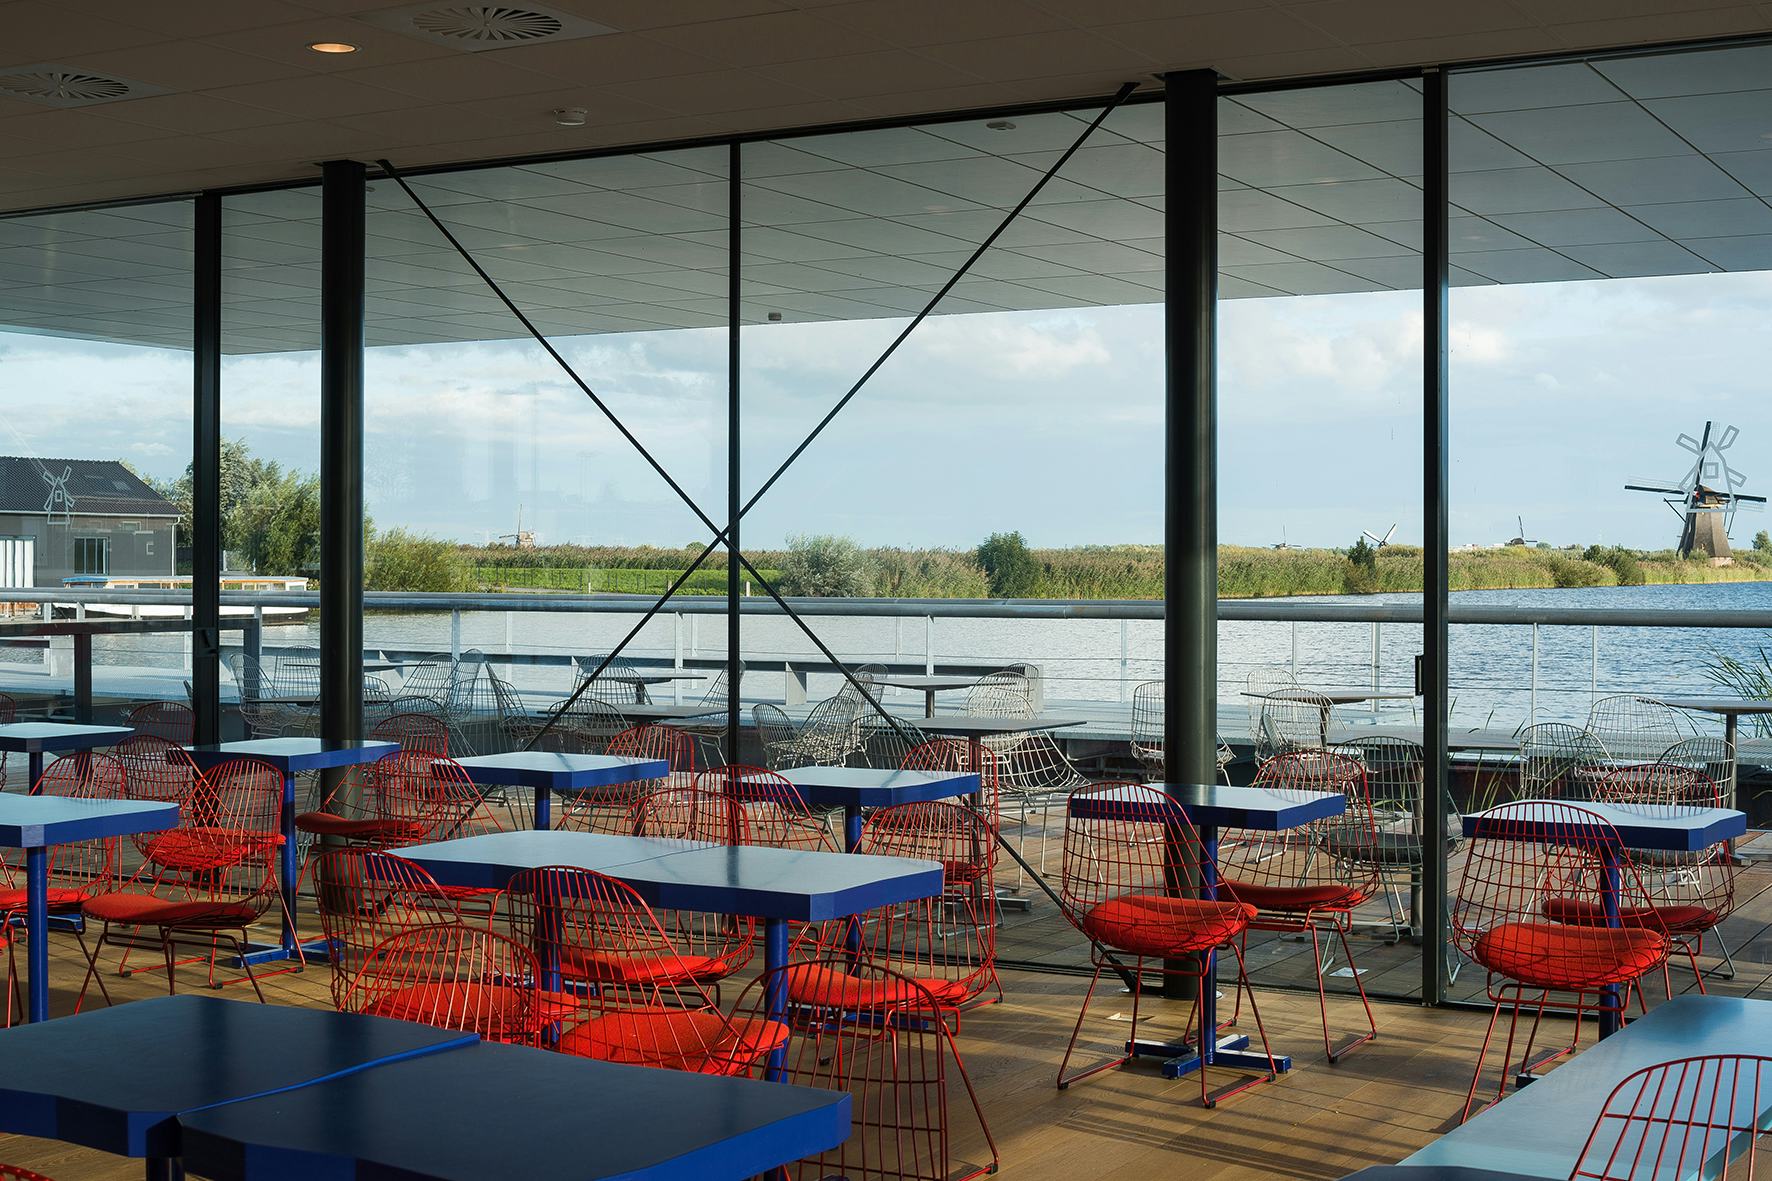 Café bezoekerscentrum Kinderdijk, fotografie: Max Hart Nibbrig